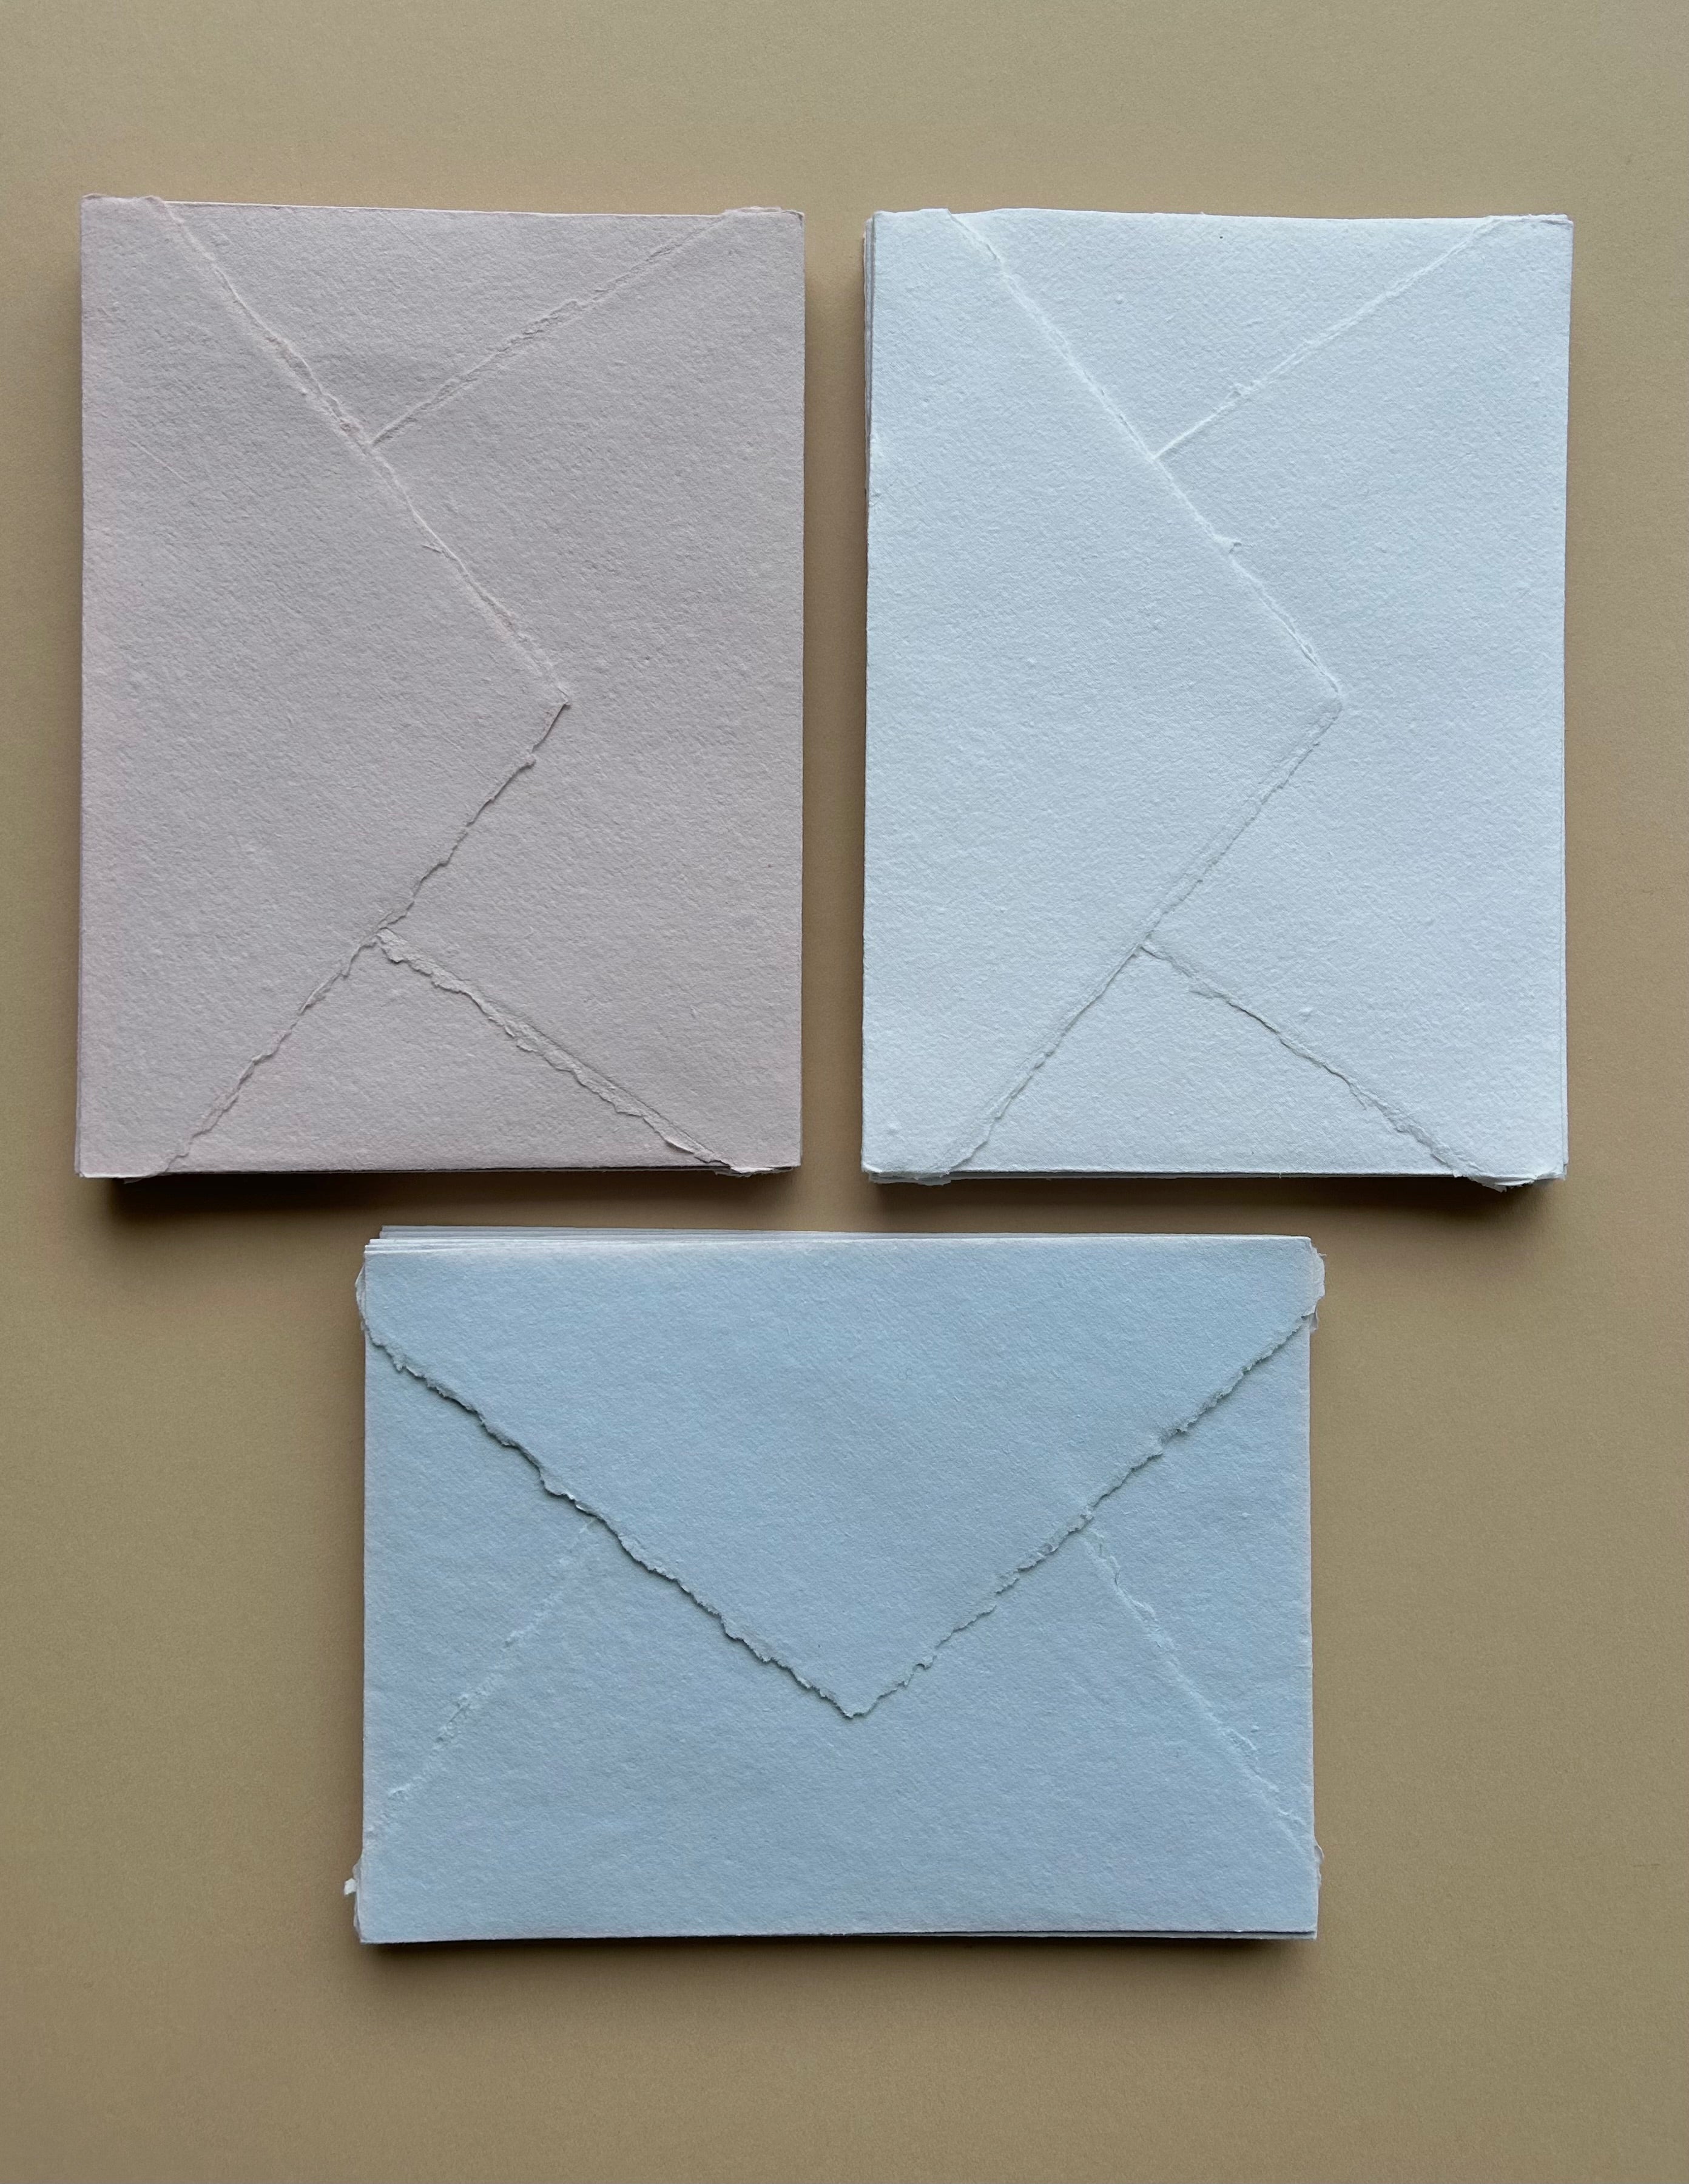 SECONDS 5x7 Cotton rag envelopes